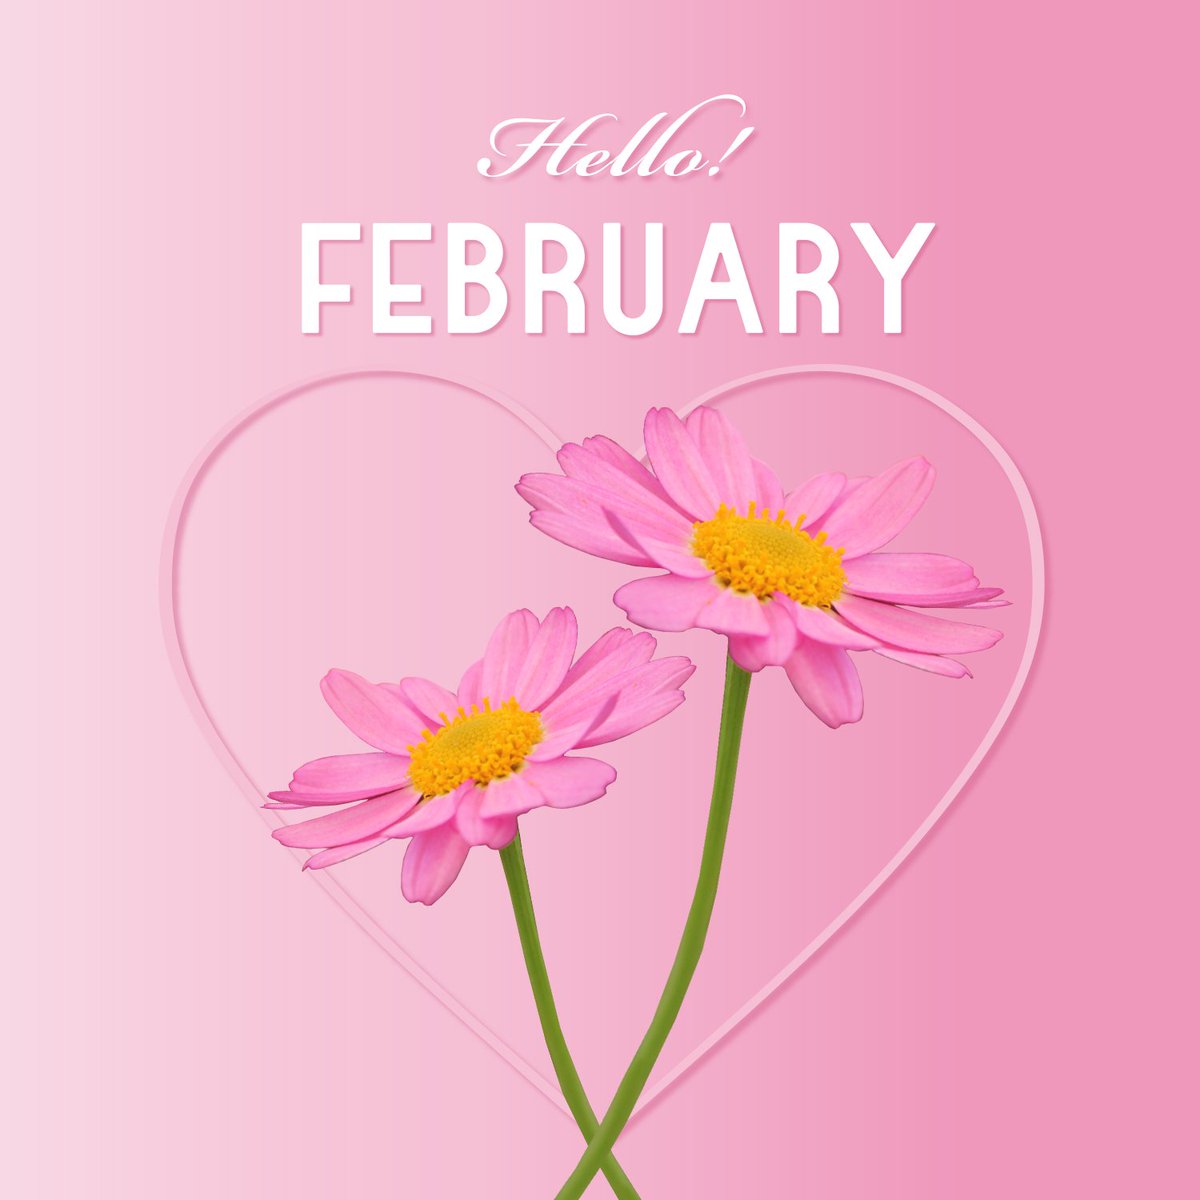 クラブコスメチックス 公式 Twitterissa 2月がスタート 2月1日の誕生花はマーガレット ピンクのマーガレットの花言葉は 真実の愛 バレンタインに向けて あなたは誰を思い浮かべますか Pink Love Flower Margaret February 女子力向上委員会